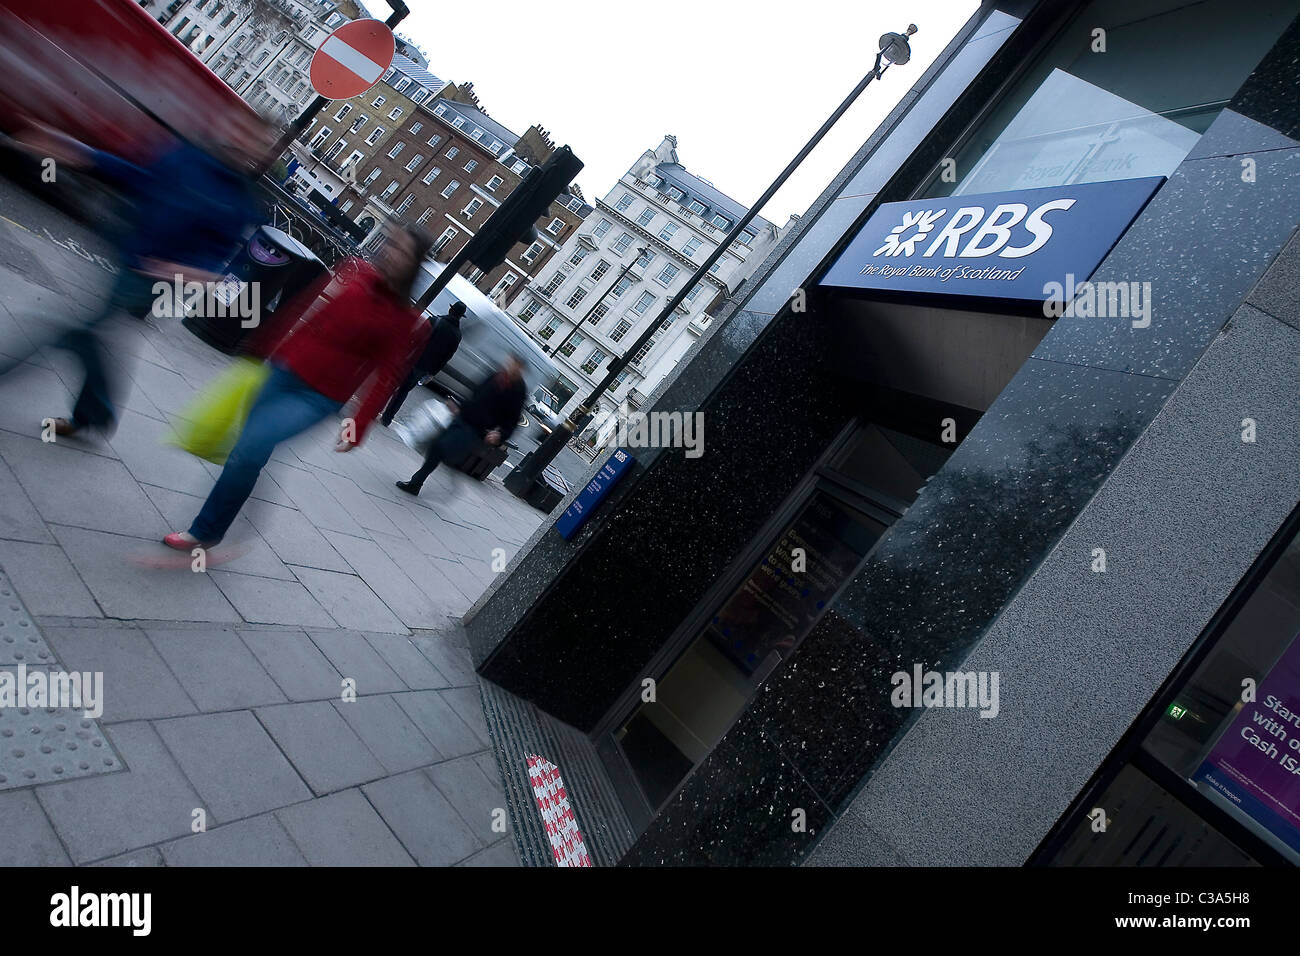 Une branche RBS dans le centre de Londres Banque D'Images